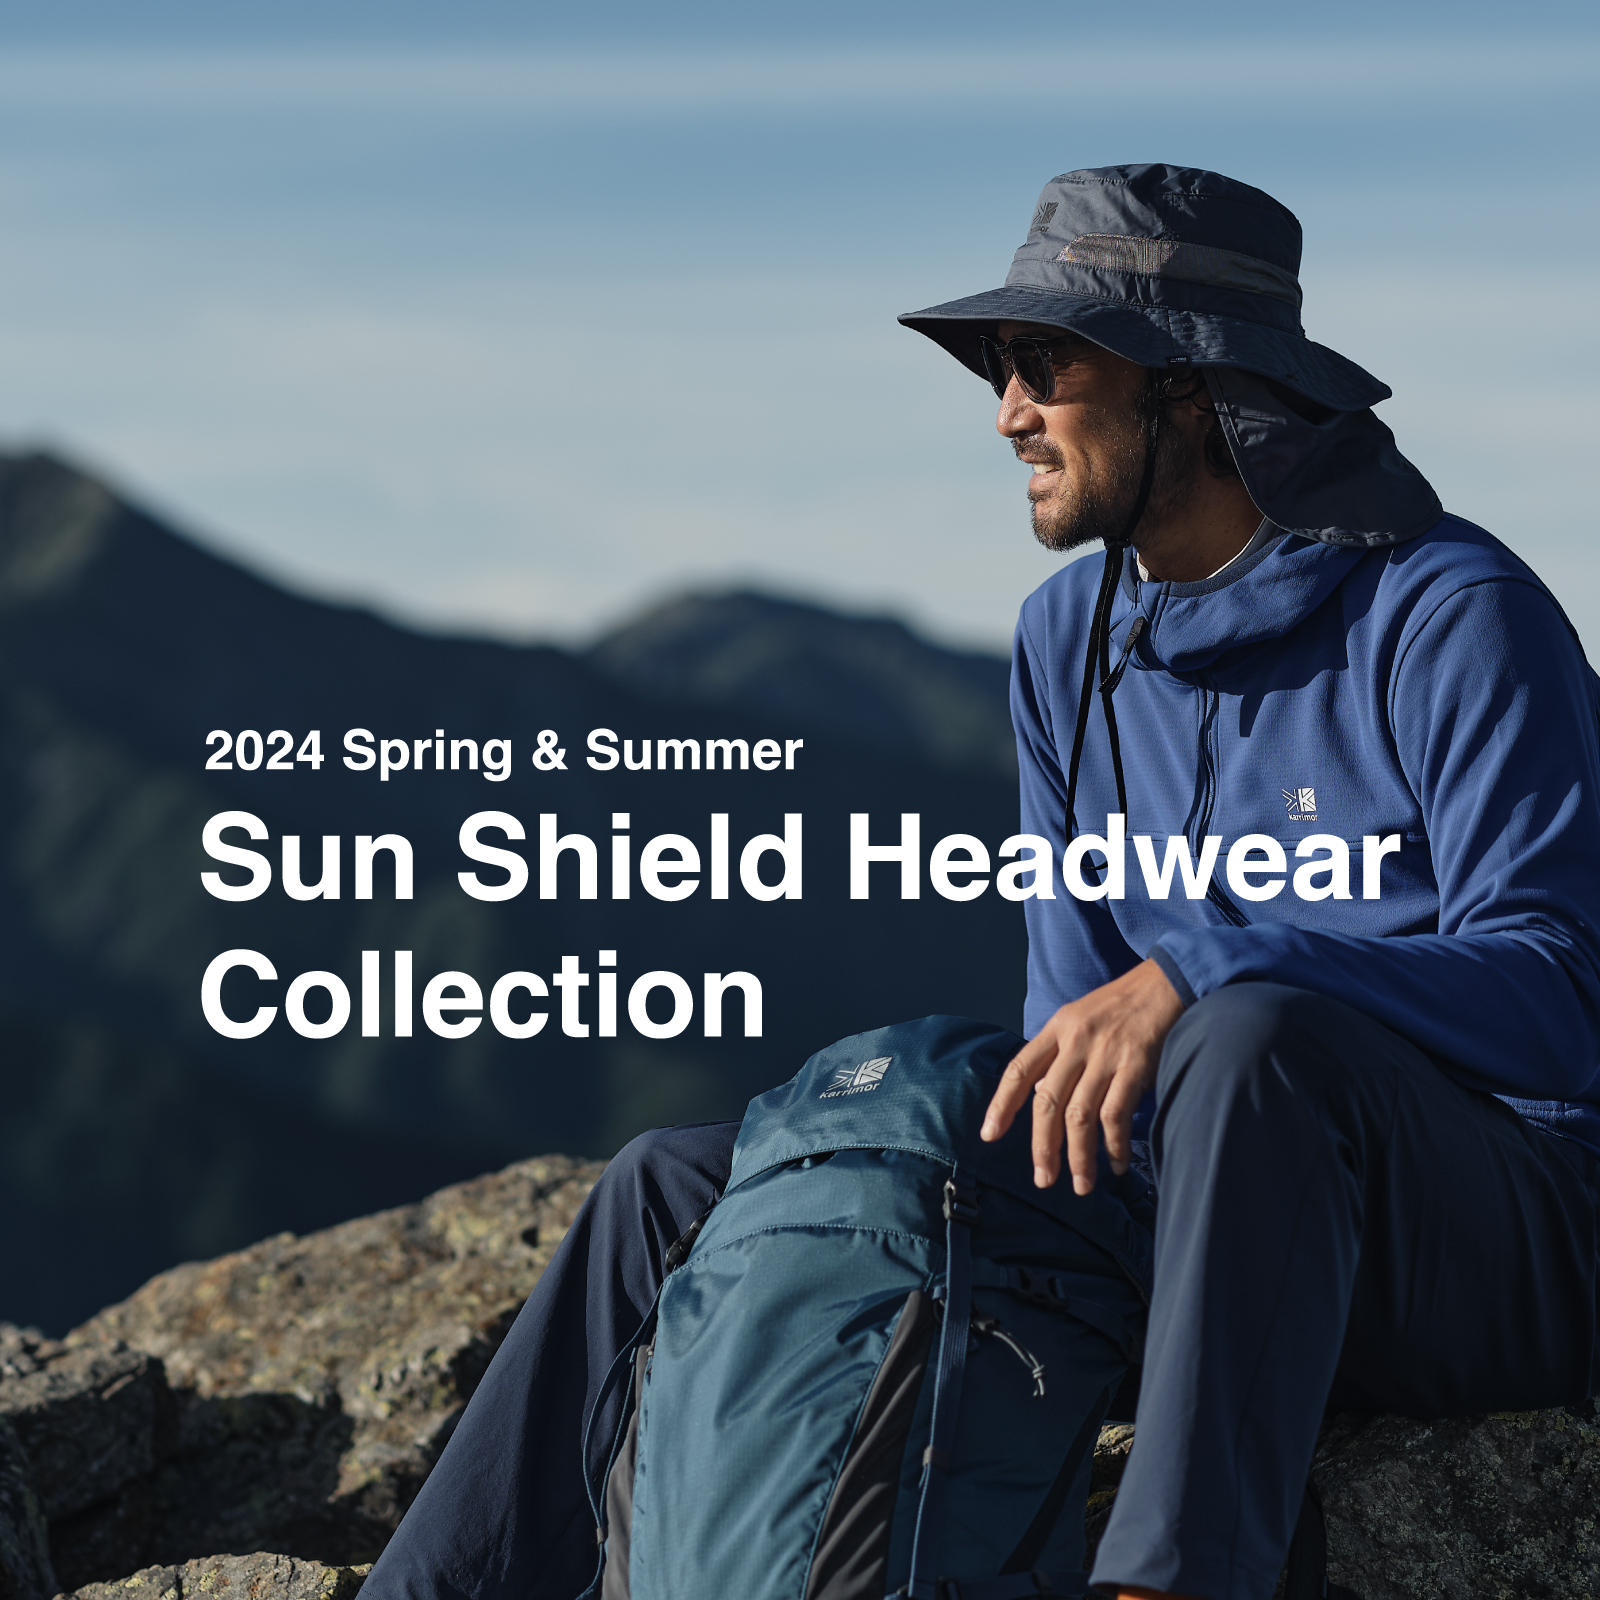 Sun Shield Headwear Collection